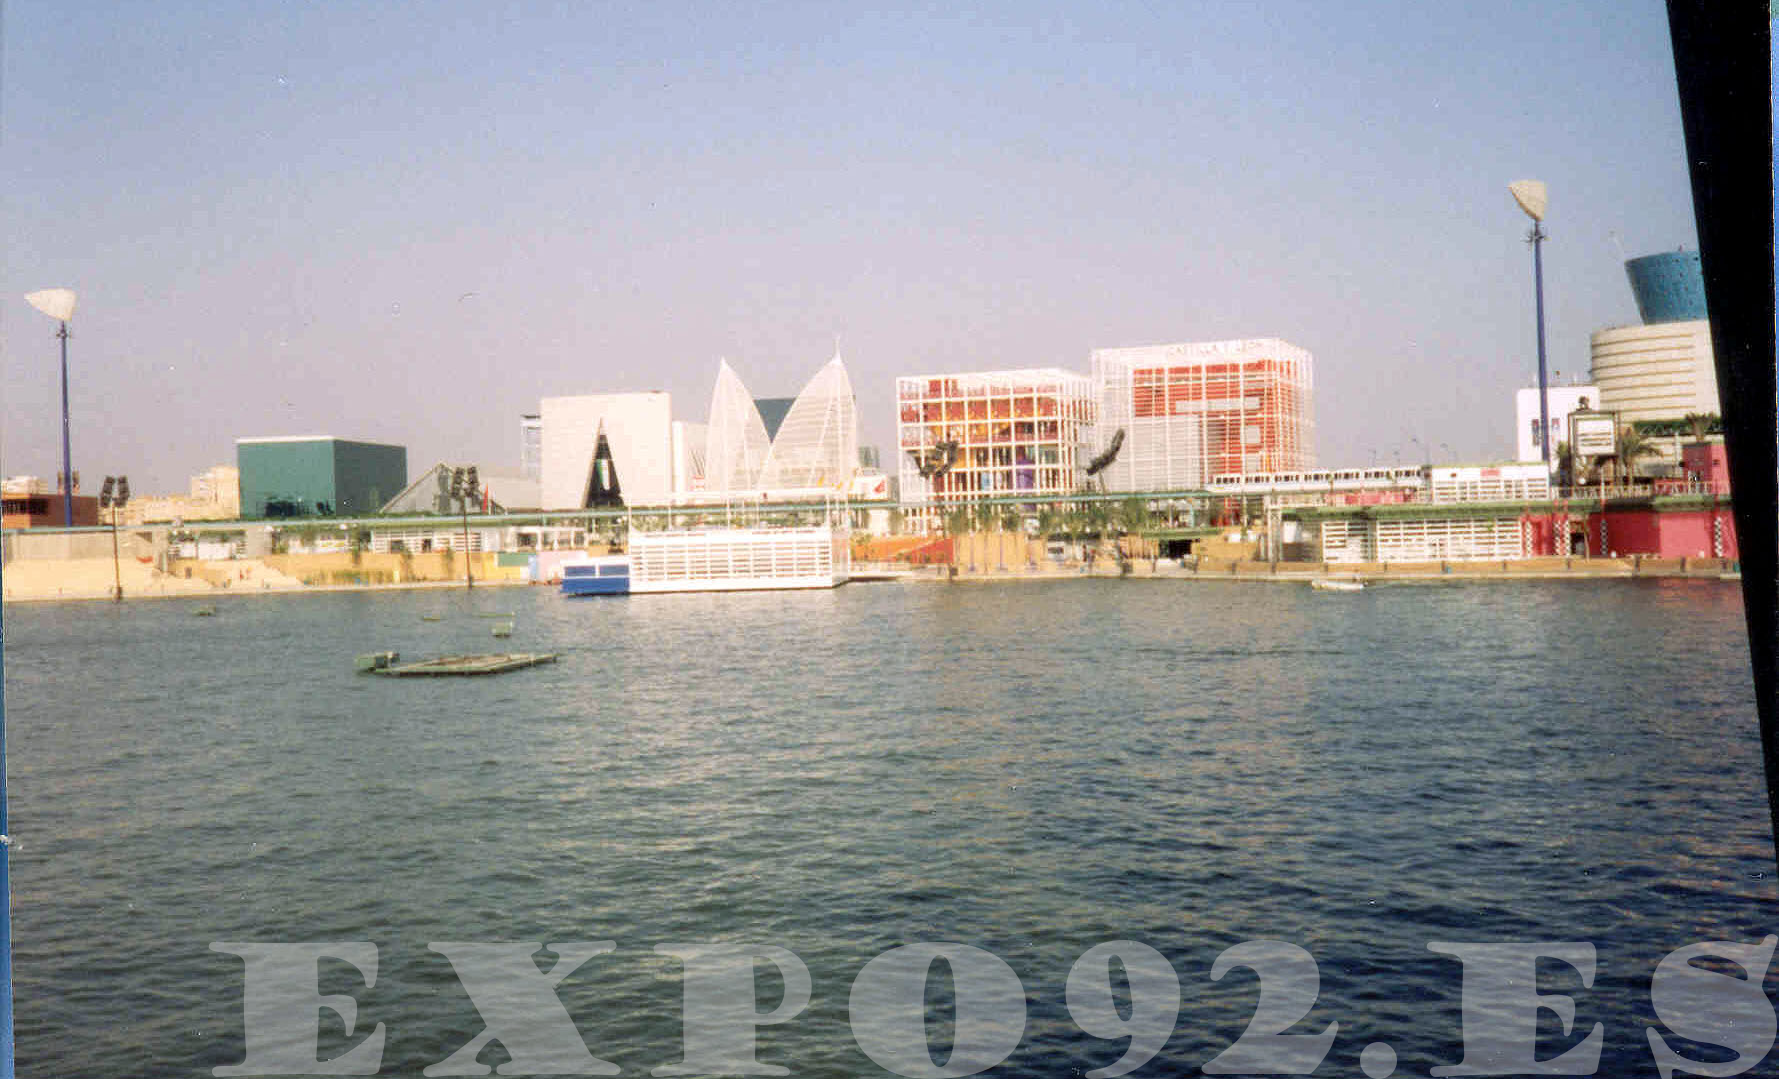 Vista del Lago de España durante EXPO 92, desde uno de los catamaranes que lo atravesaba.